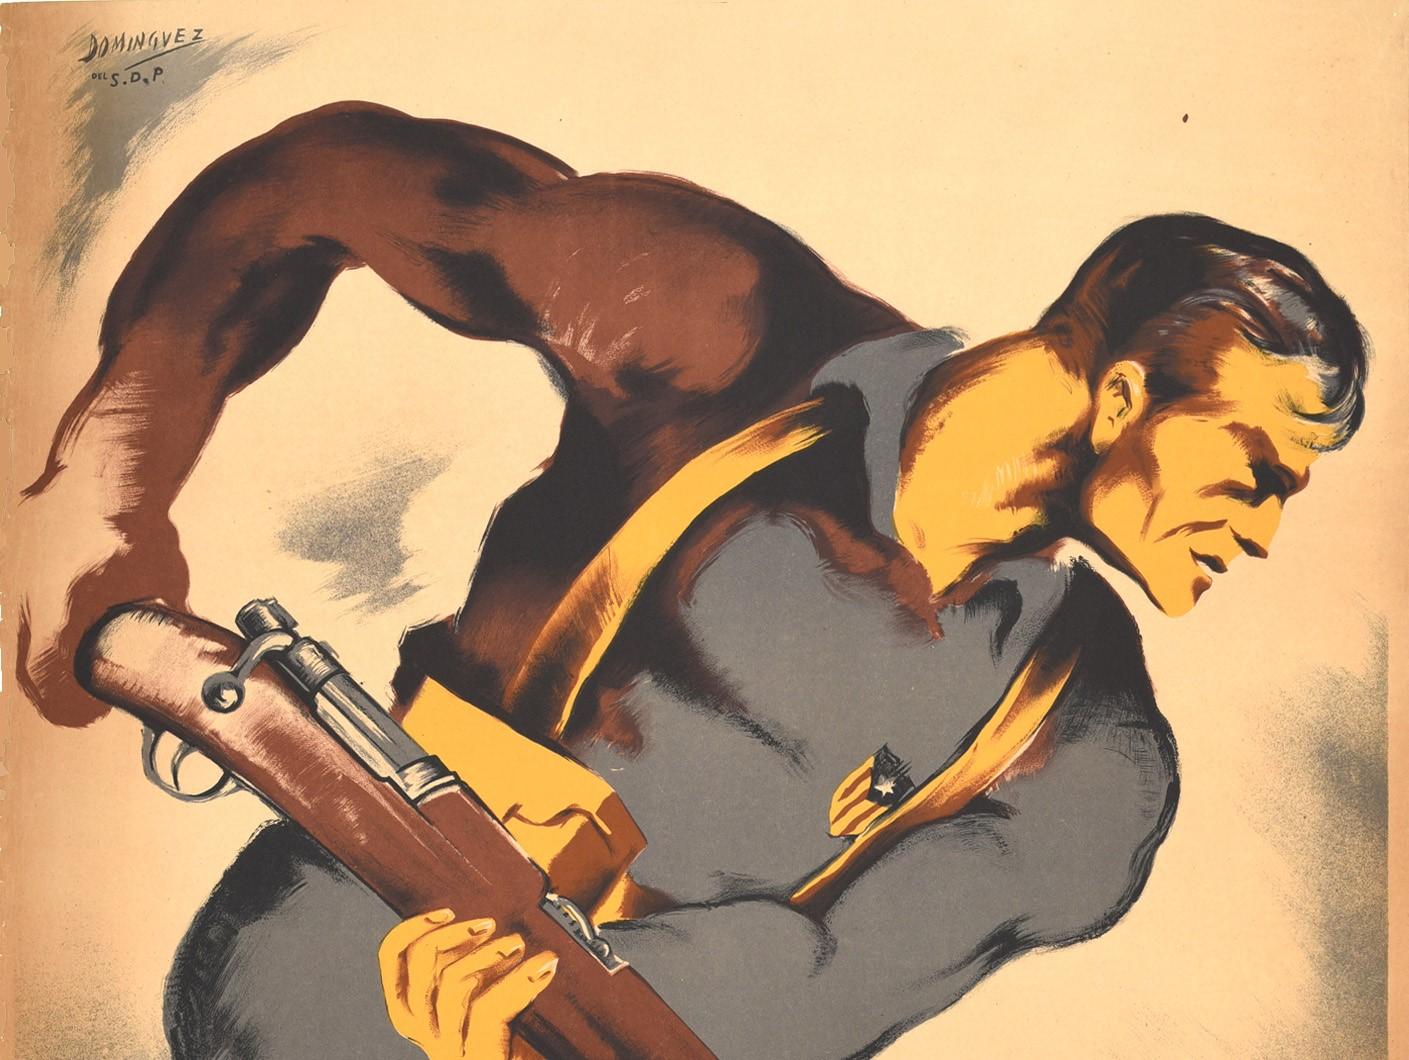 Original-Vintage-Poster „Arme des katalanischen Staates Spanien“, Bürgerkrieg, Propaganda – Print von Domingvez